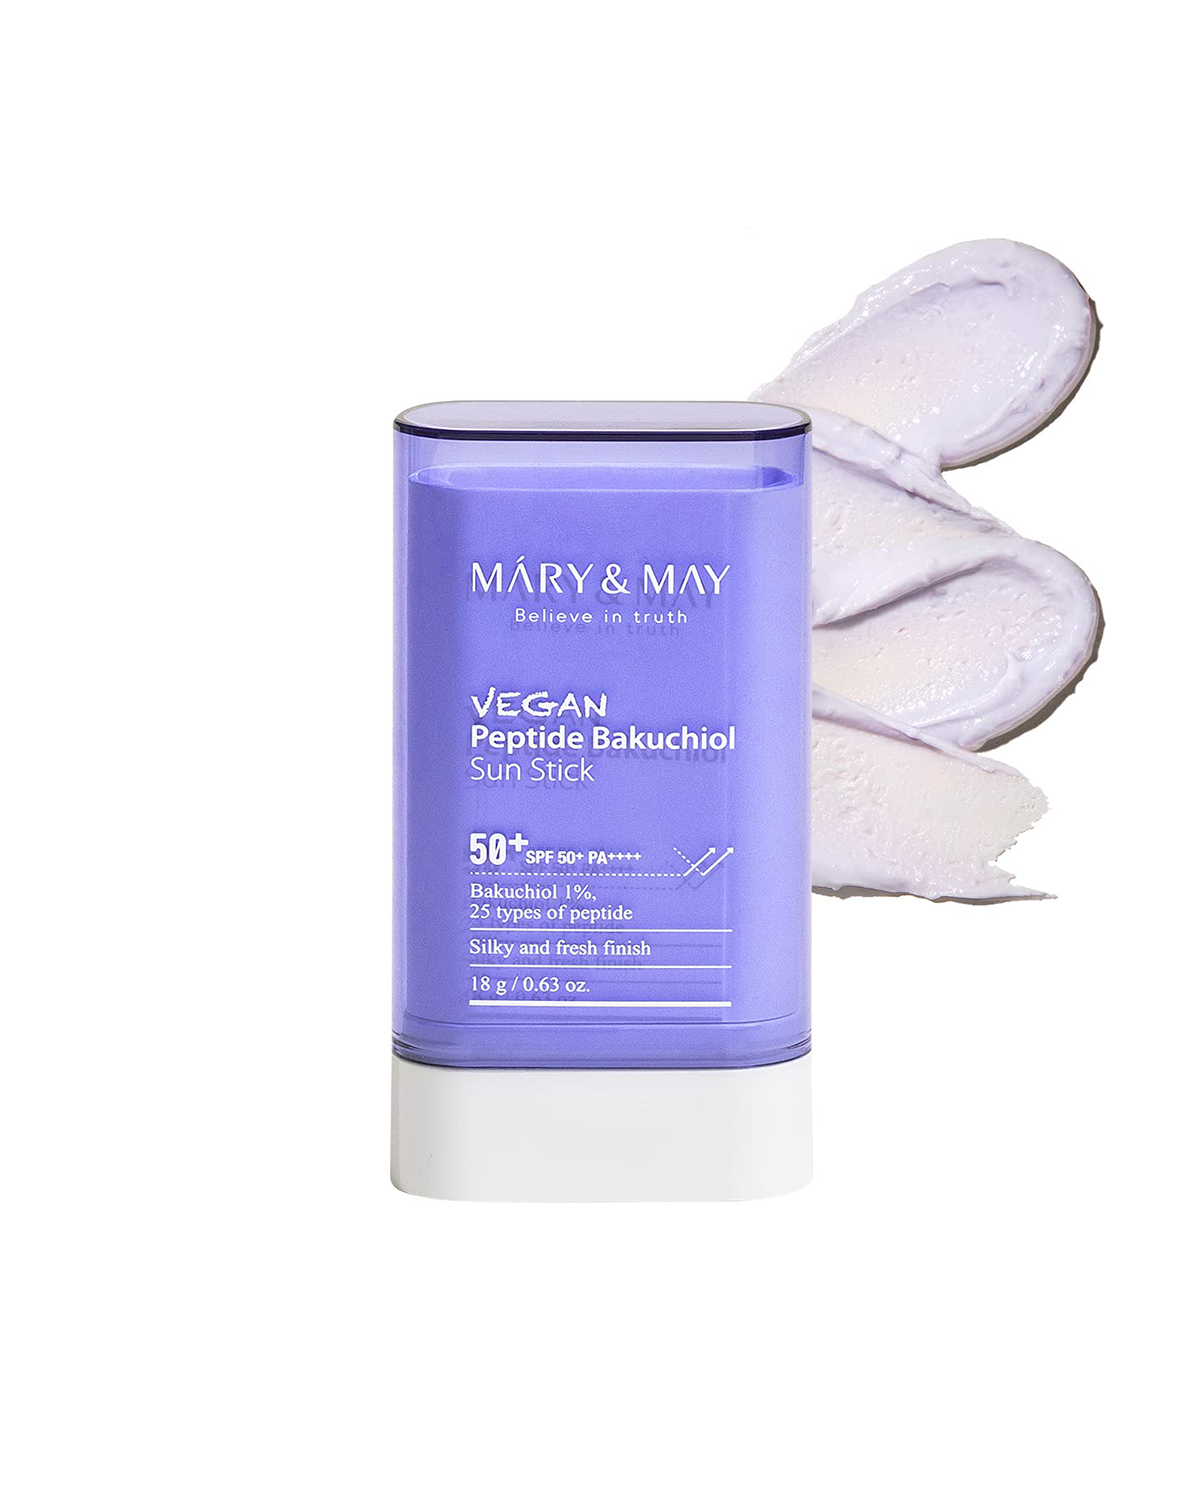 MARY&MAY Vegan Peptide Bakuchiol Sun Stick 50+ PA++++ 18 g